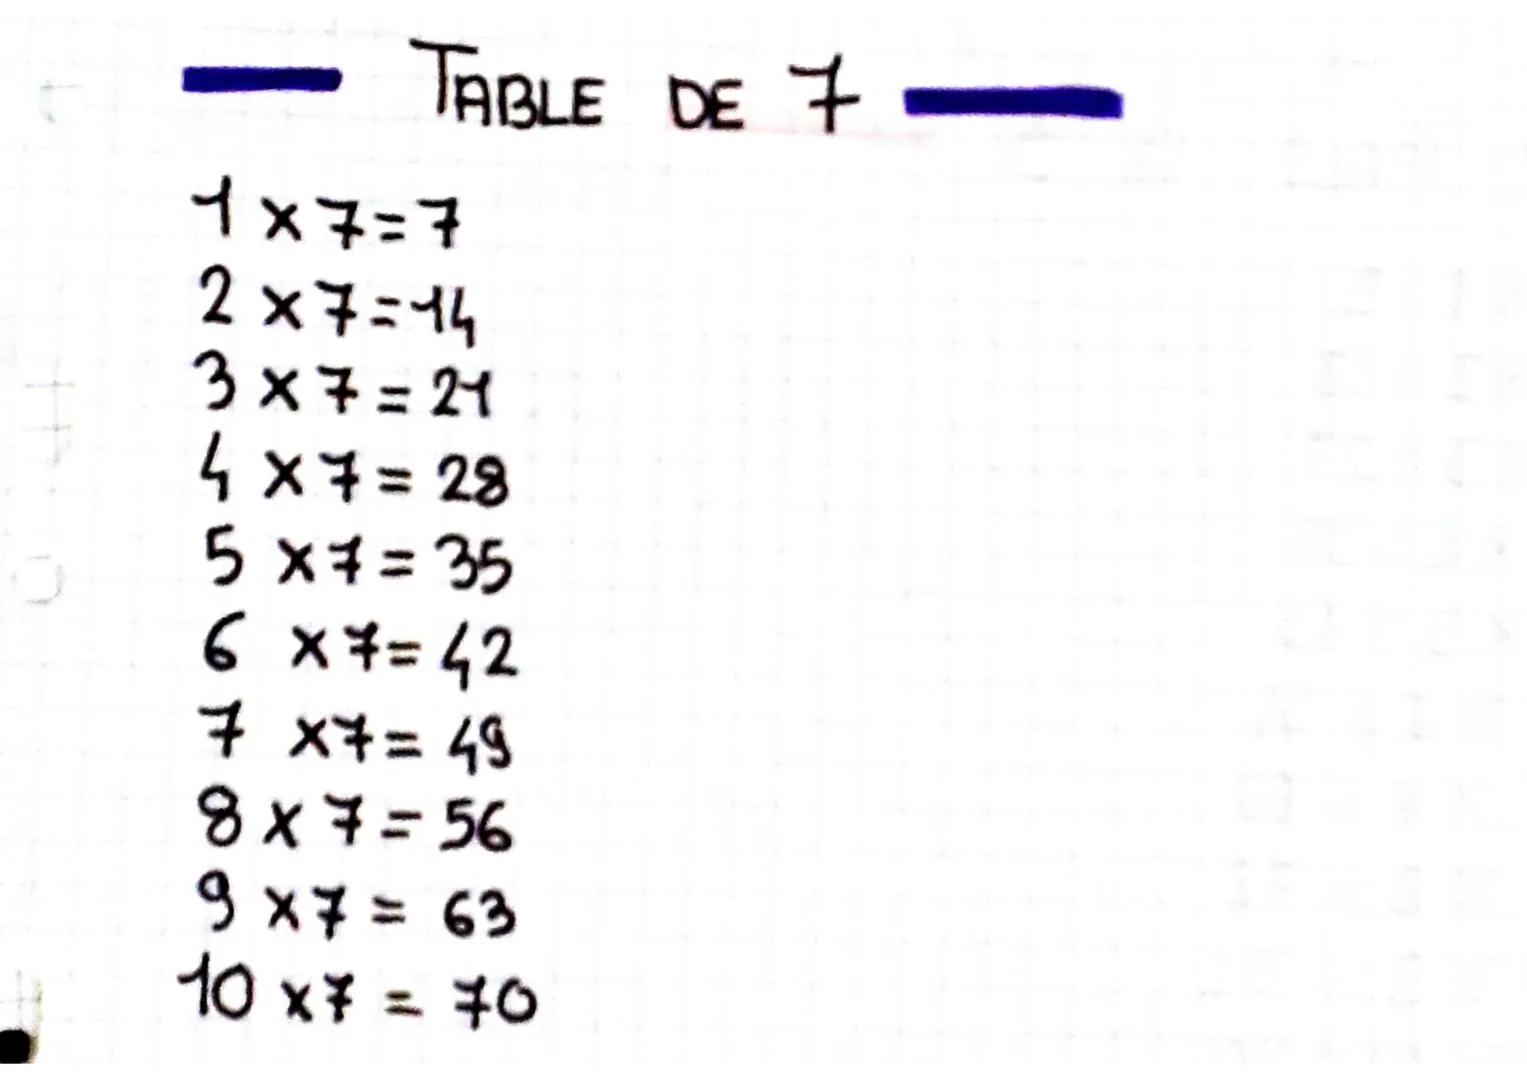 TABLE DE 7
1x7=7
2x7=14
3x7=21
4x7=28
5x7=35
6 x 7=42
7 x7= 49
8x7=56
9x7 = 63
10x7 = 70